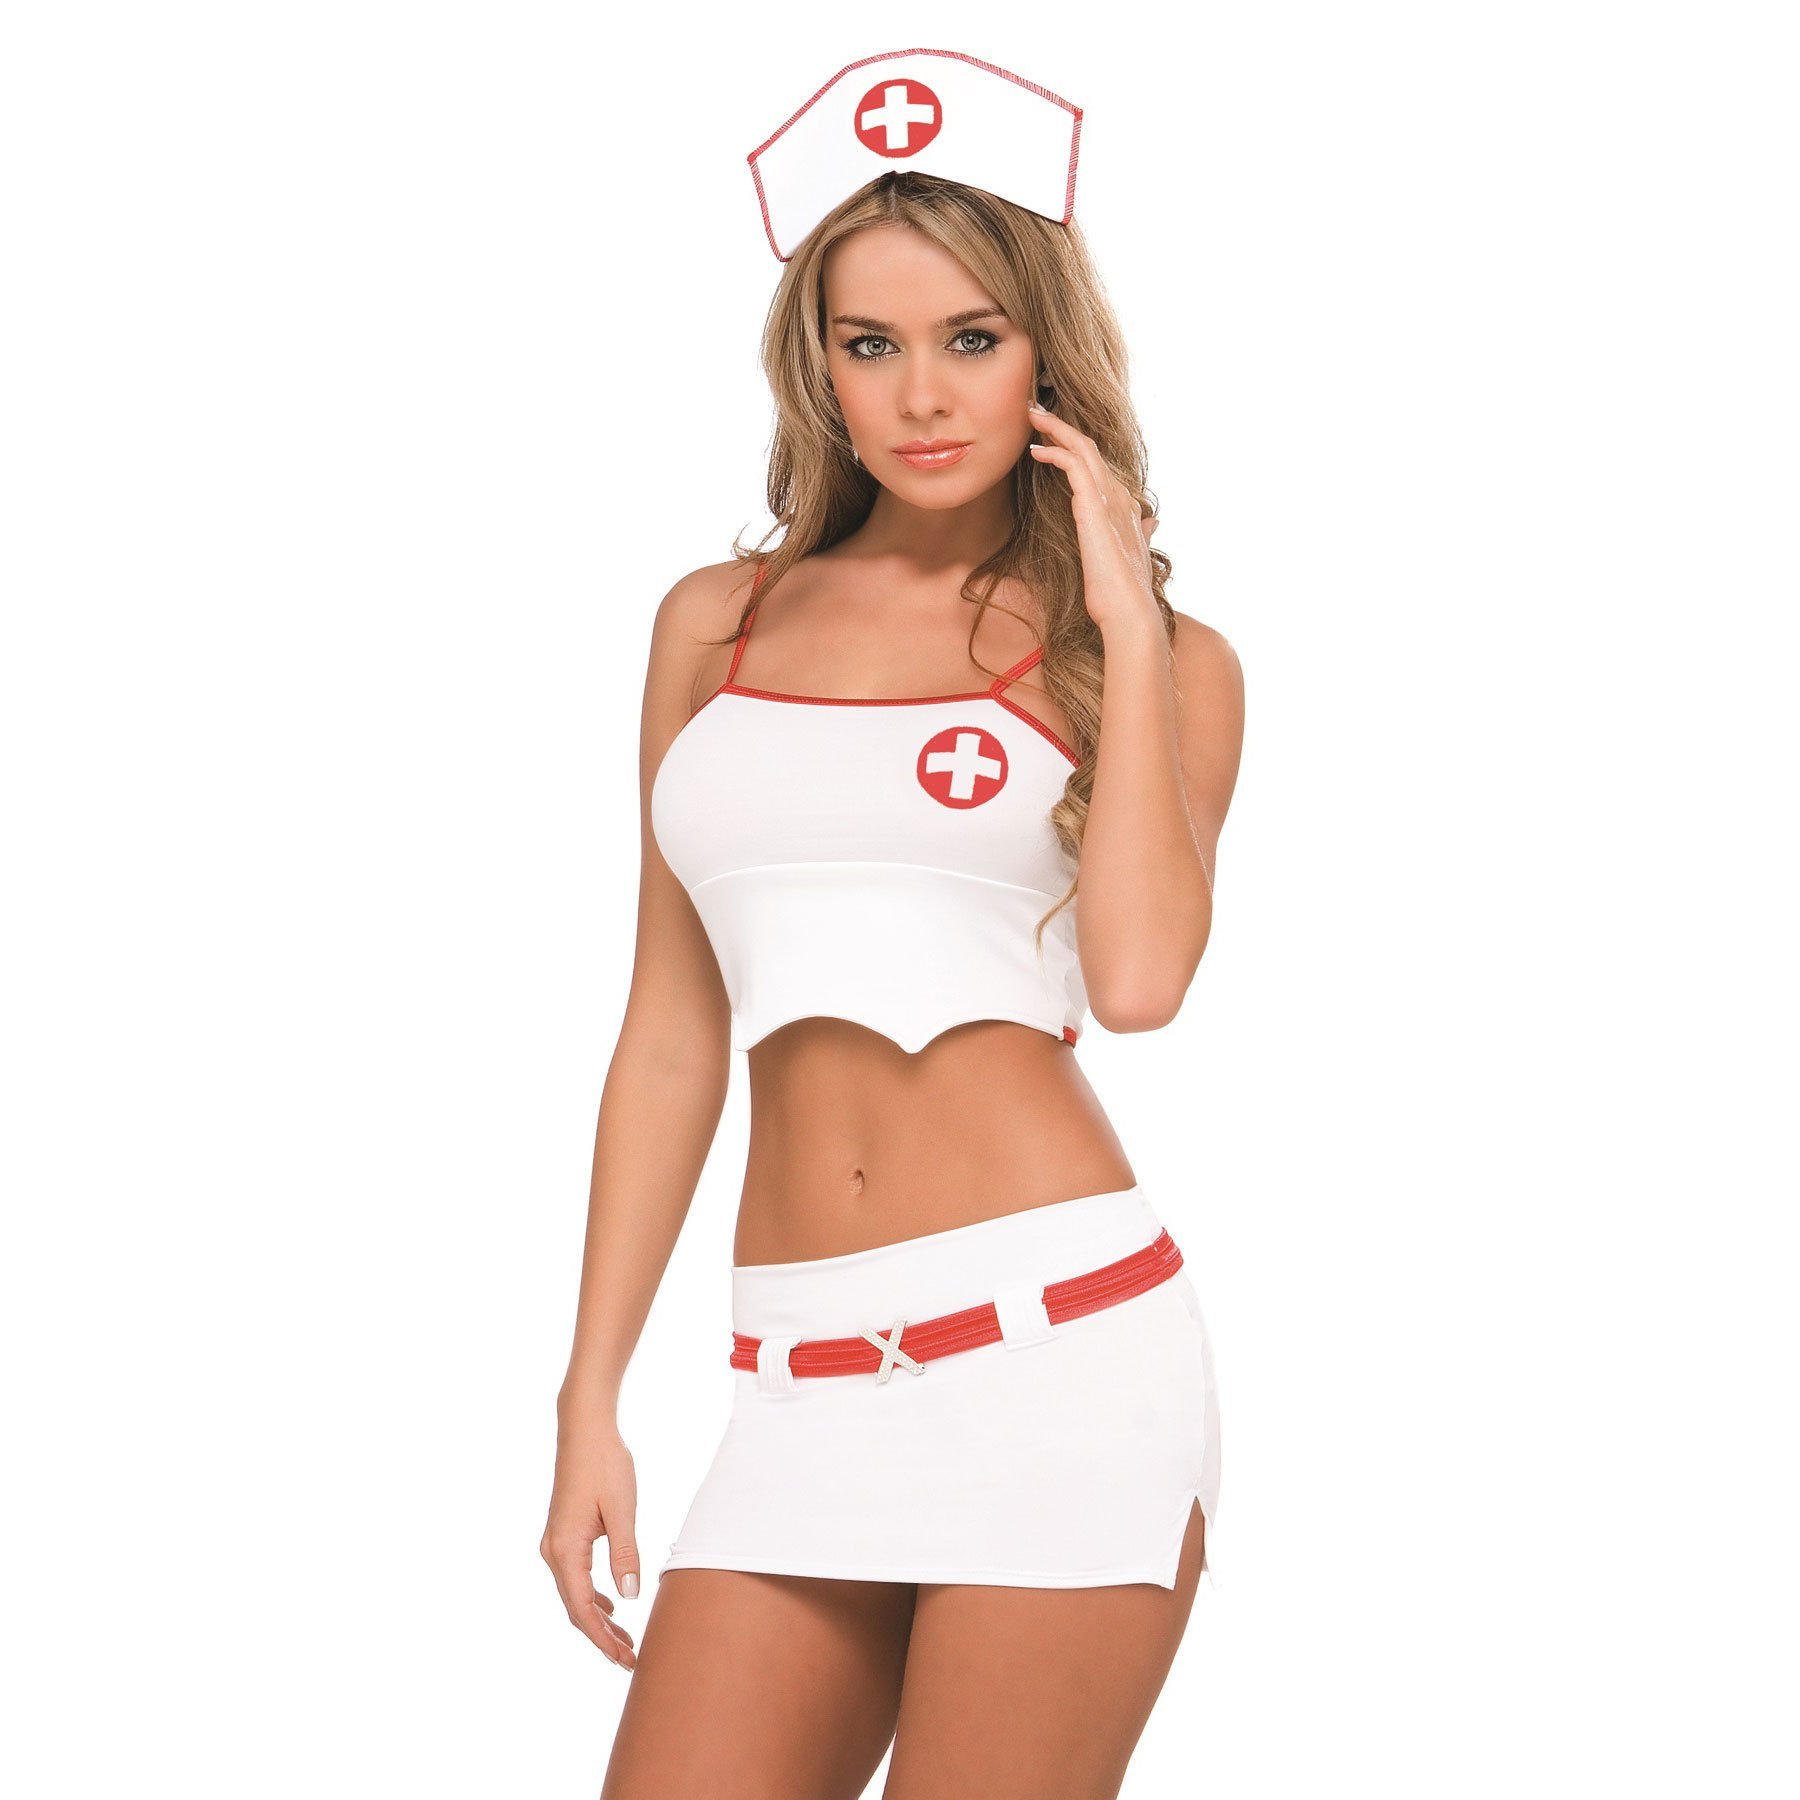 Naughty nurse